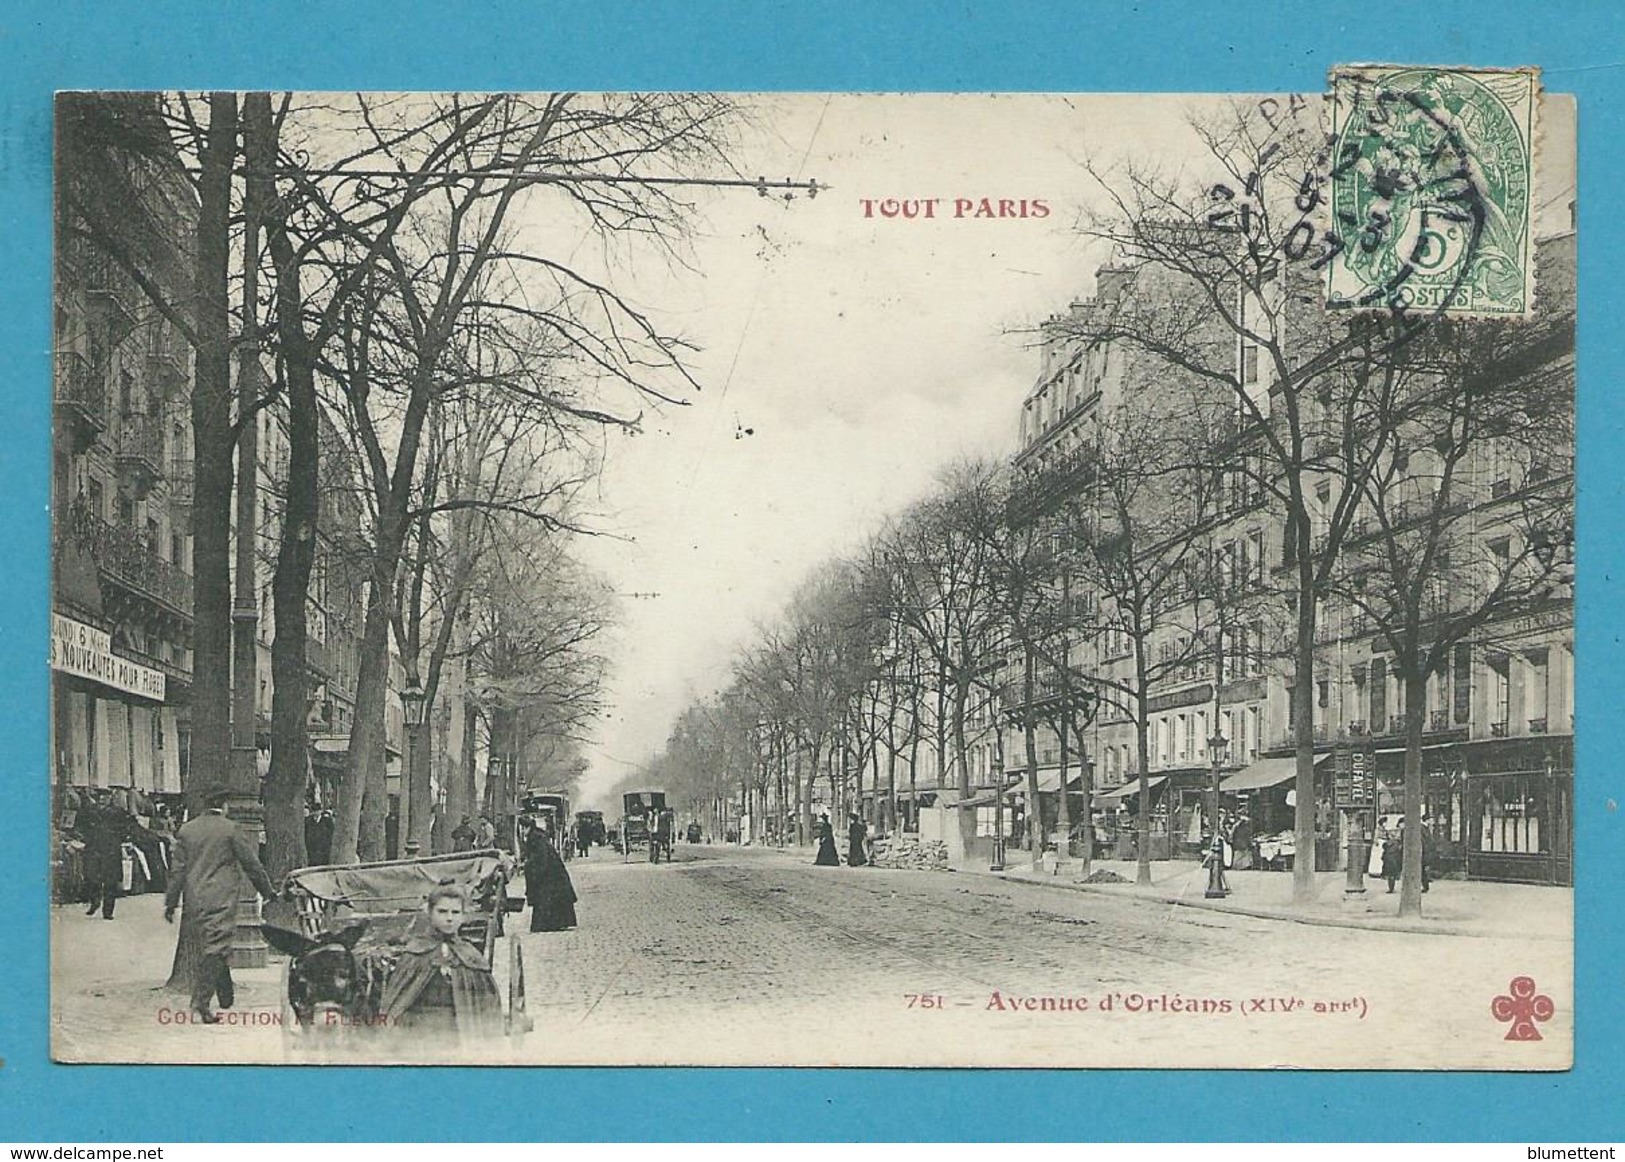 CPA TOUT PARIS 751 - Avenue D'Orléans (XIVème Arrt.) Ed. FLEURY - Arrondissement: 14